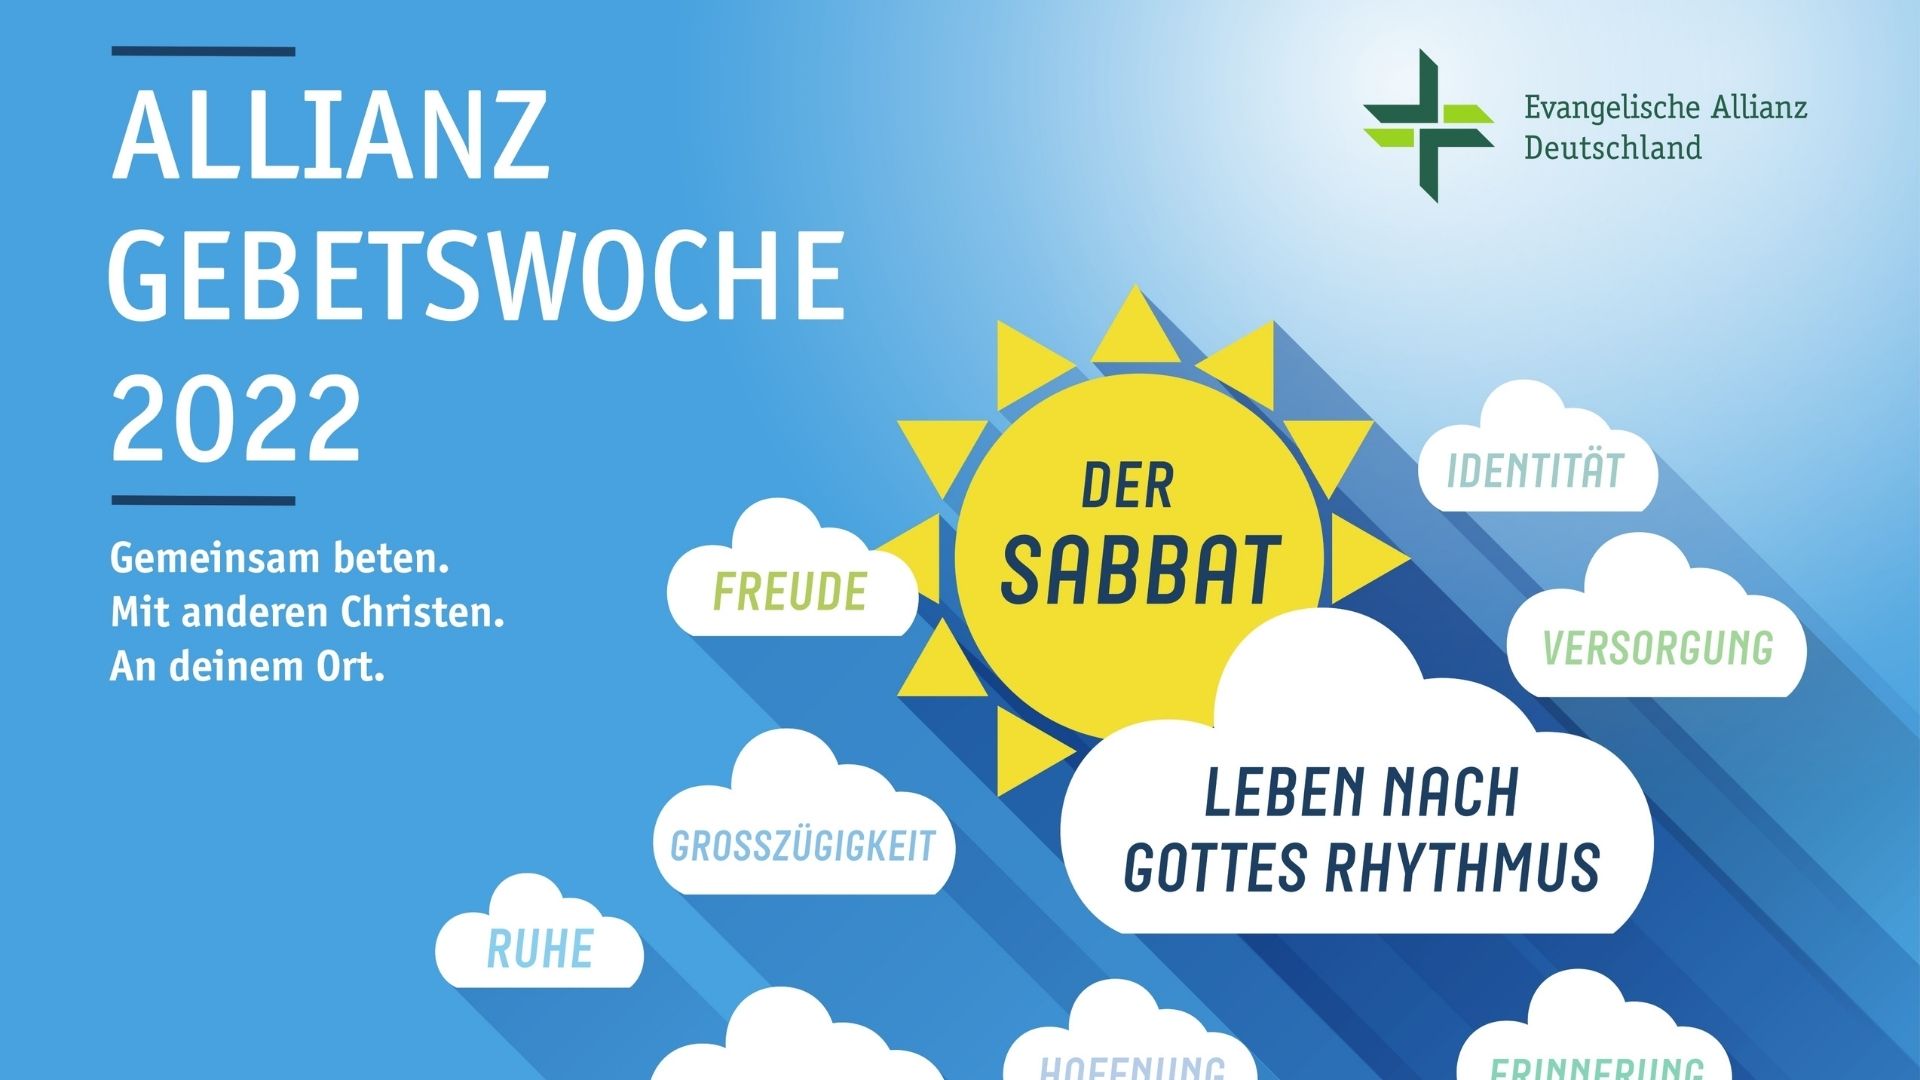 Featured image for “Weltweite Gebetswoche 2022 der Ev. Allianz”